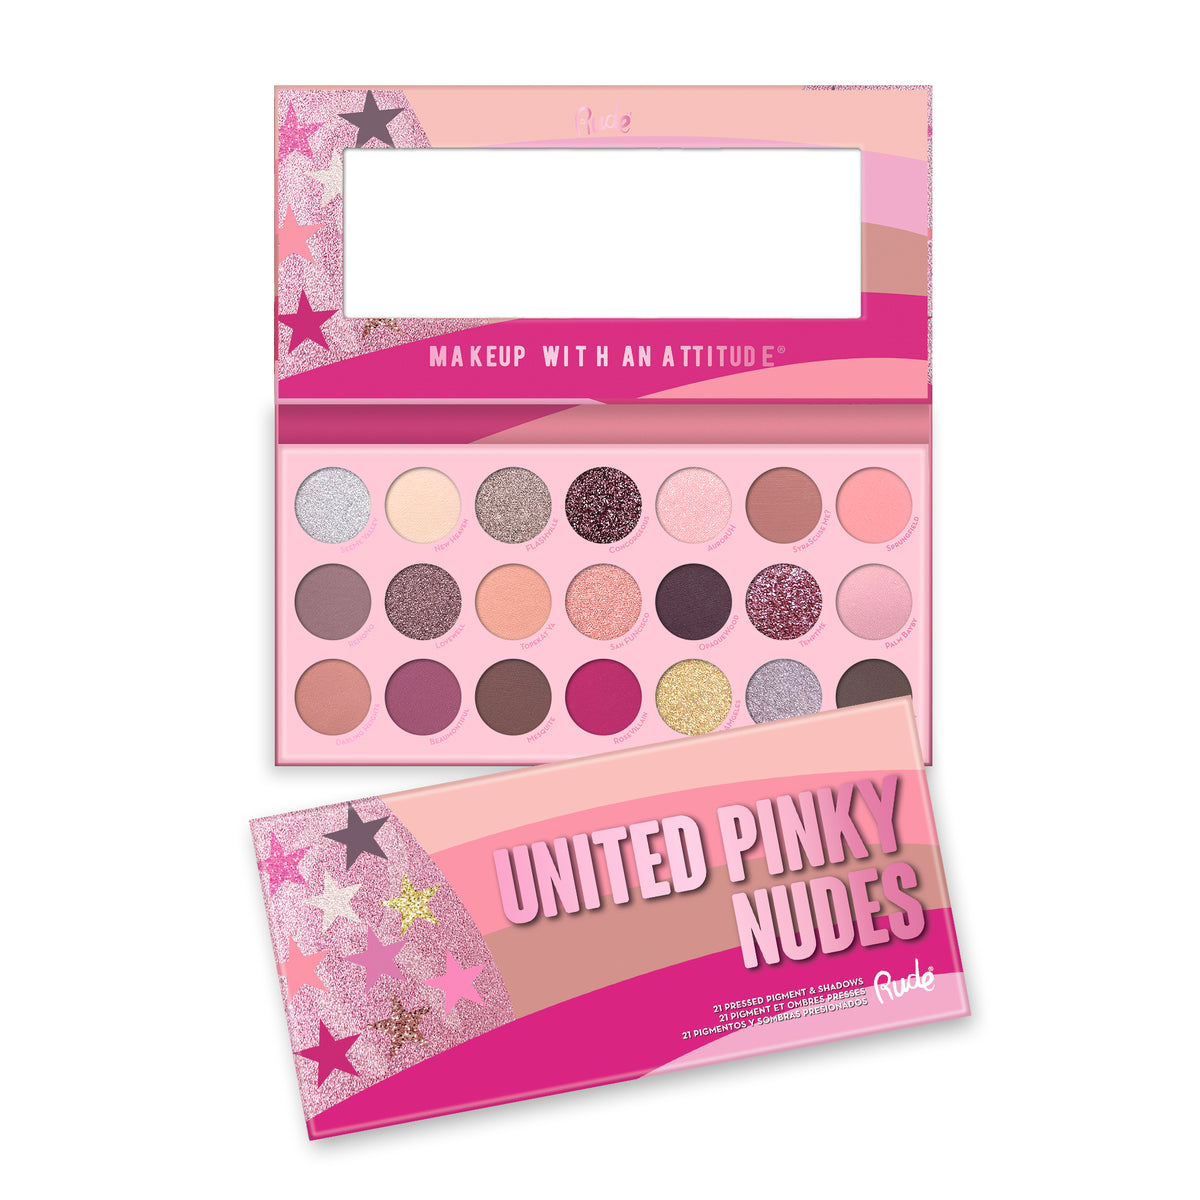 United Pinky Nudes Palette Display Set, 24 pcs